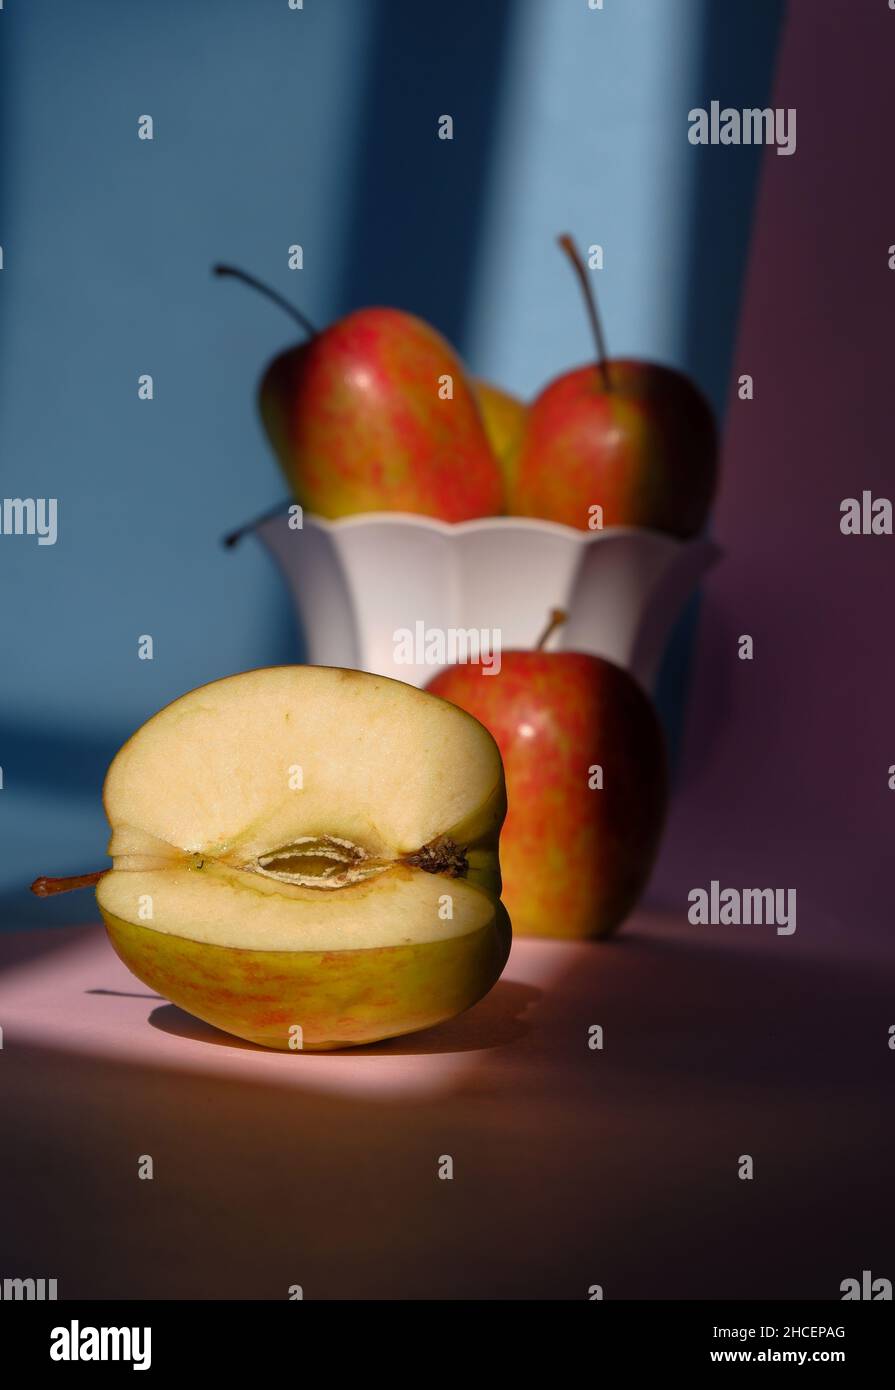 Foto eines Apfels in einem Behälter auf einem rosa und blauen Hintergrund Stockfoto